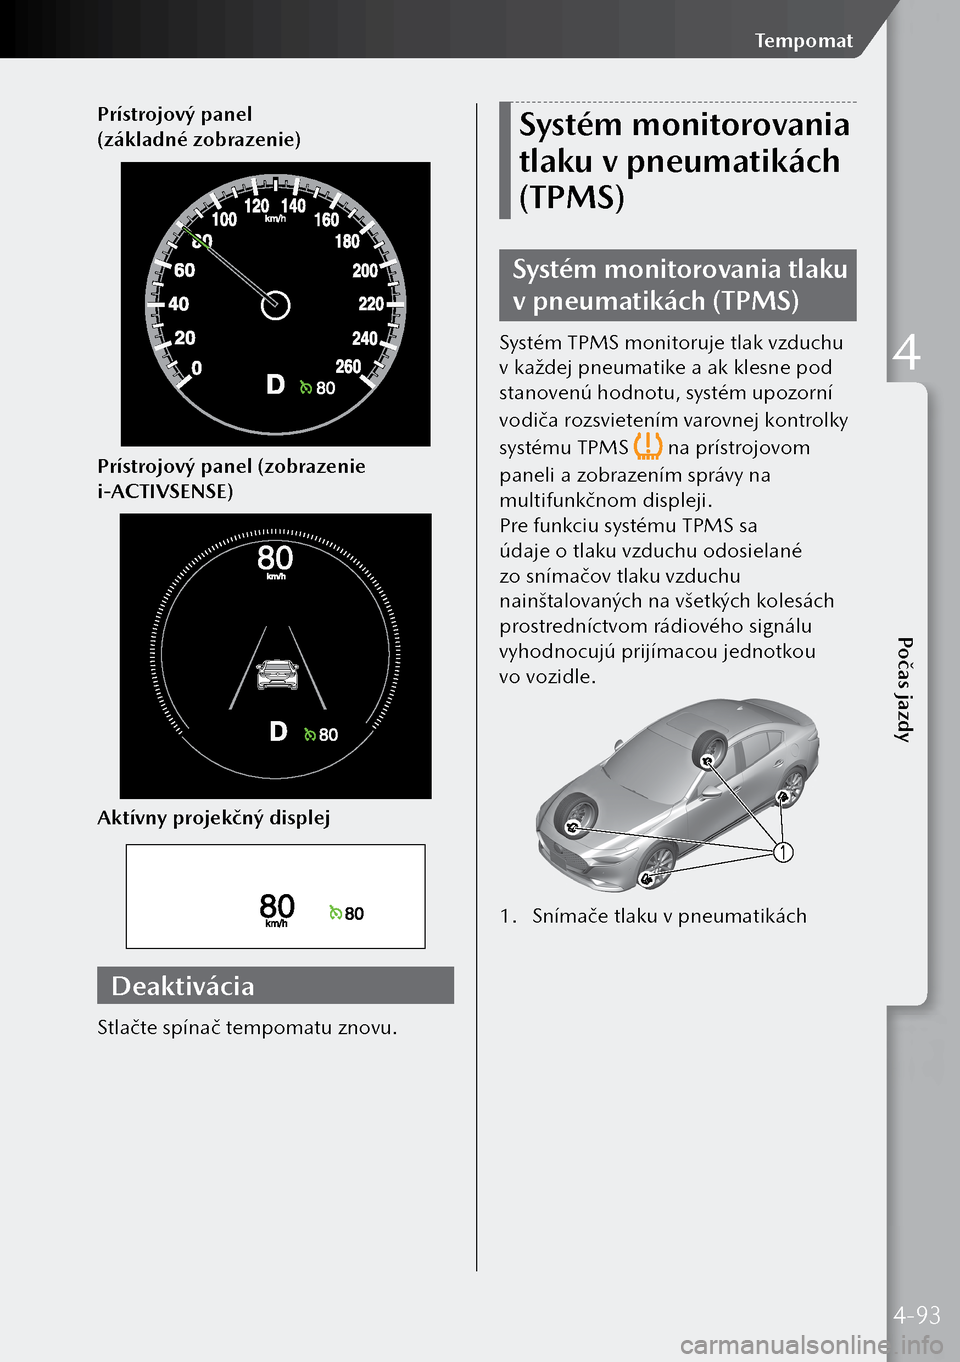 MAZDA MODEL 3 HATCHBACK 2019  Užívateľská príručka (in Slovak) Prístrojový panel 
(základné zobrazenie)
Prístrojový panel (zobrazenie 
i-ACTIVSENSE)
Aktívny projekčný displej
Deaktivácia
Stlačte spínač tempomatu znovu.
Systém monitorovania 
tlaku v